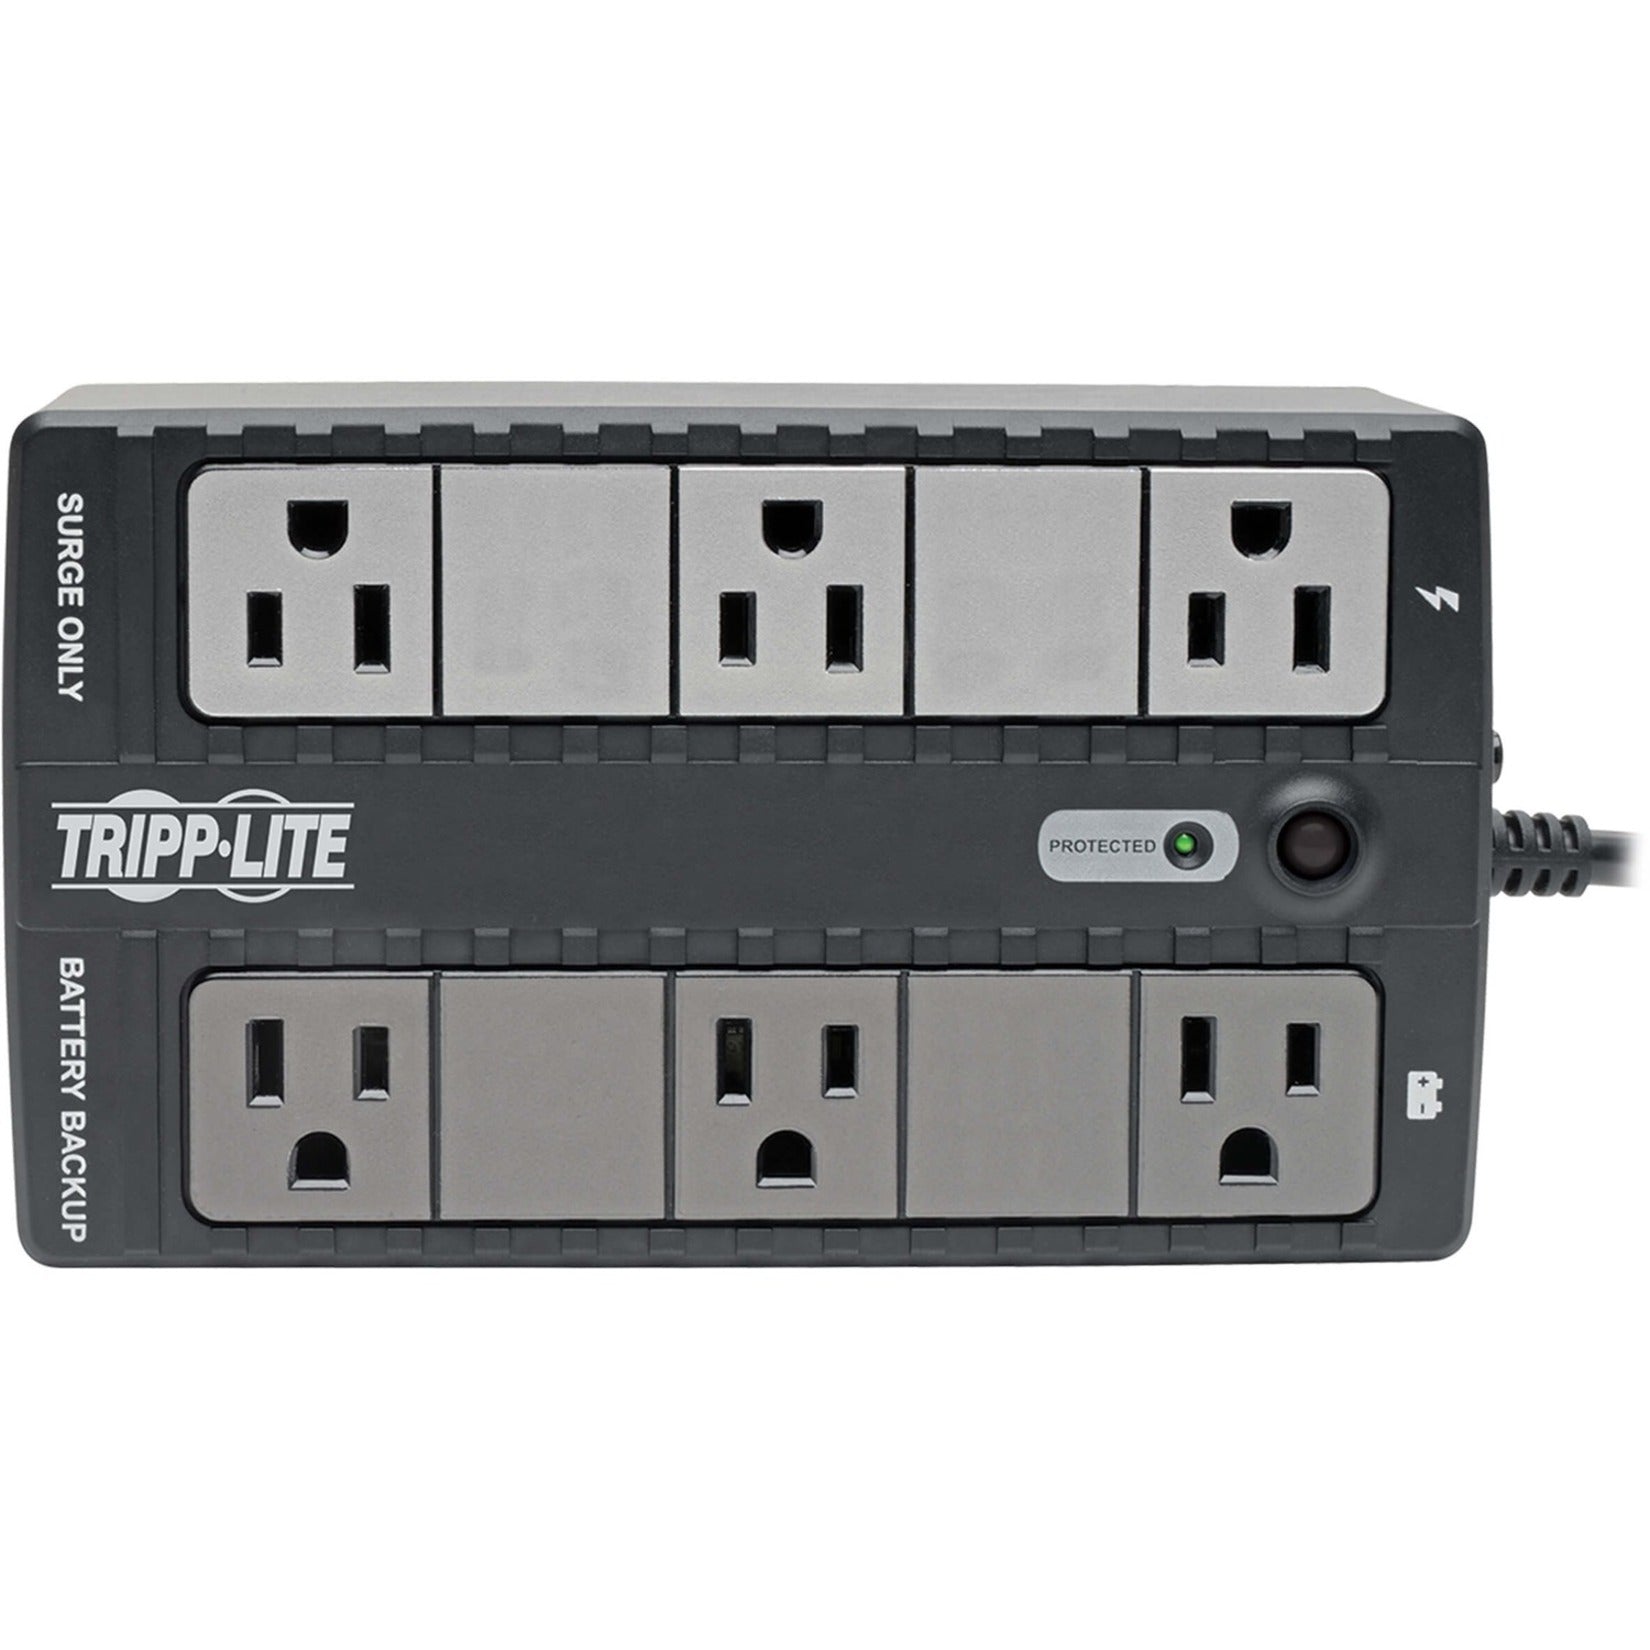 特力裏 Tripp Lite INTERNET350U 網絡辦公室 UPS，350 VA，6個插座，1個RJ11，1個USB，3年保修